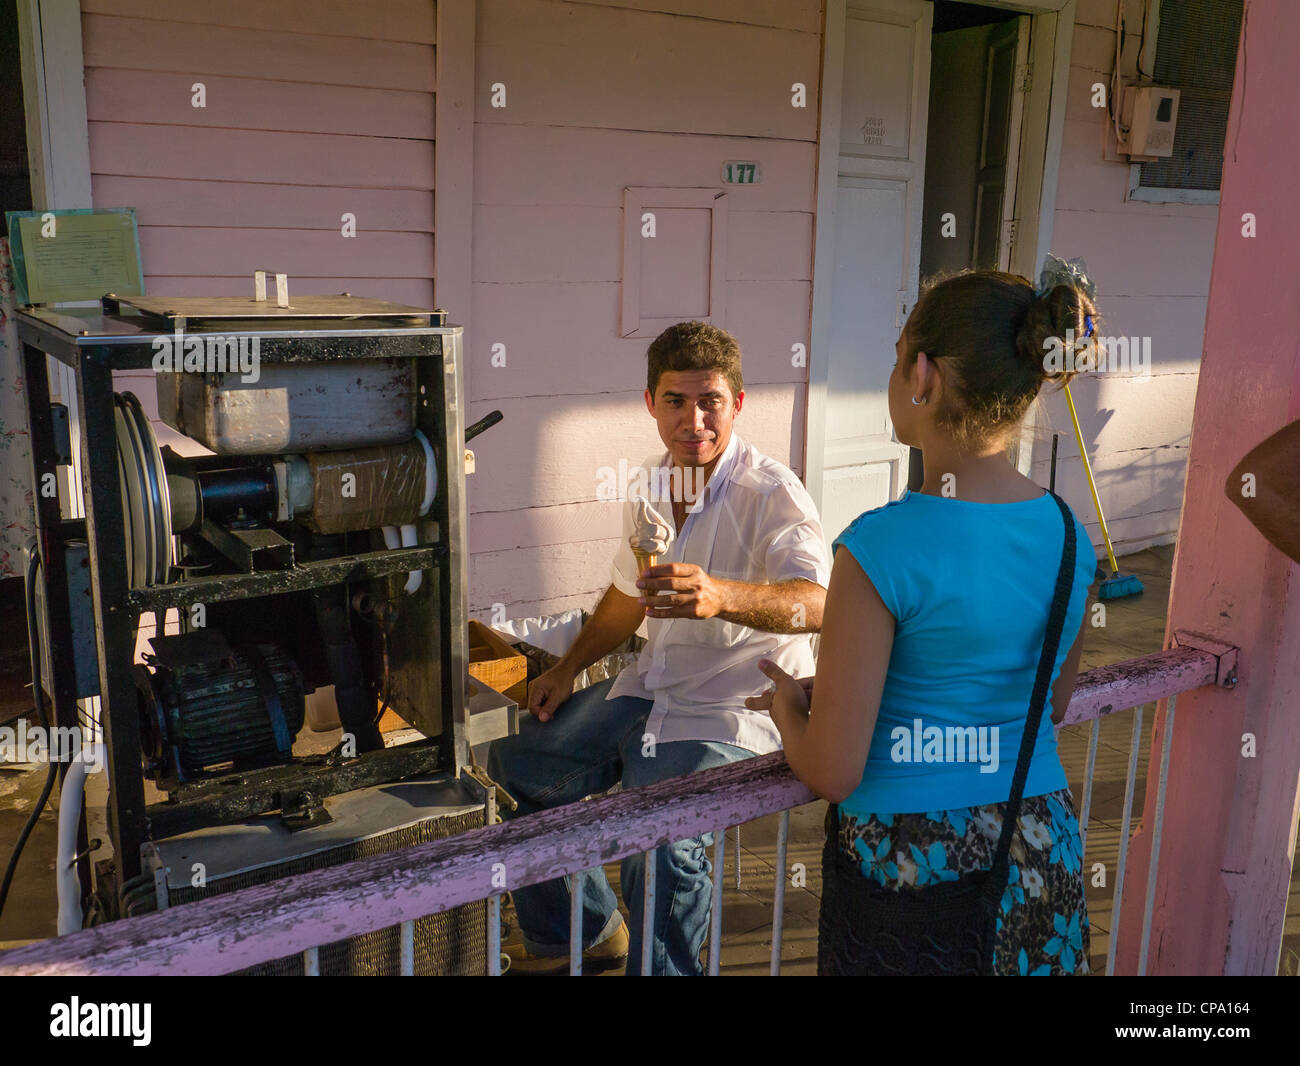 Ein Mann, der ein Haus Geschäft verkaufte Eis aus seiner Veranda in Viñales, Kuba betreibt verkauft einen Kegel mit einer Mädchen. Stockfoto